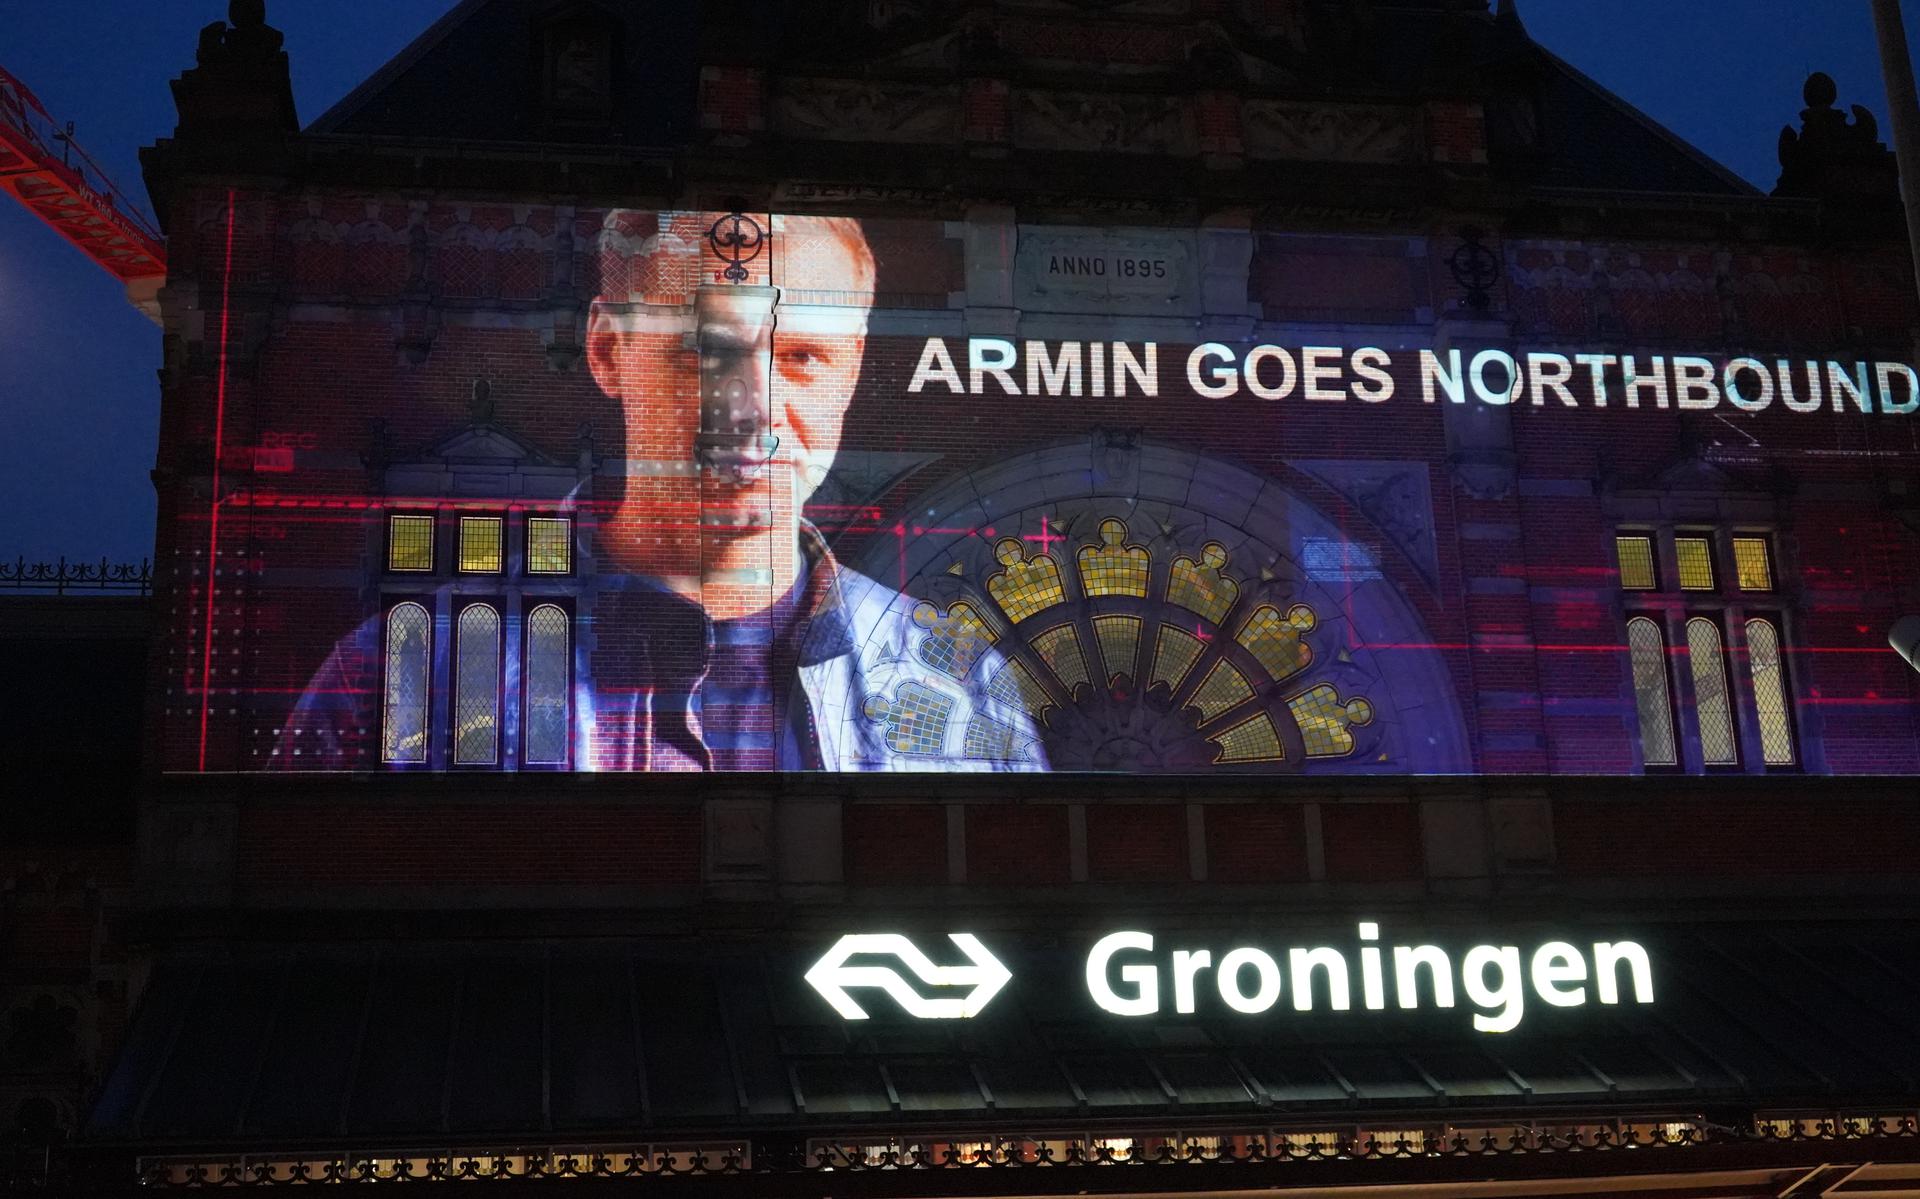 Armin Goes Northbound.